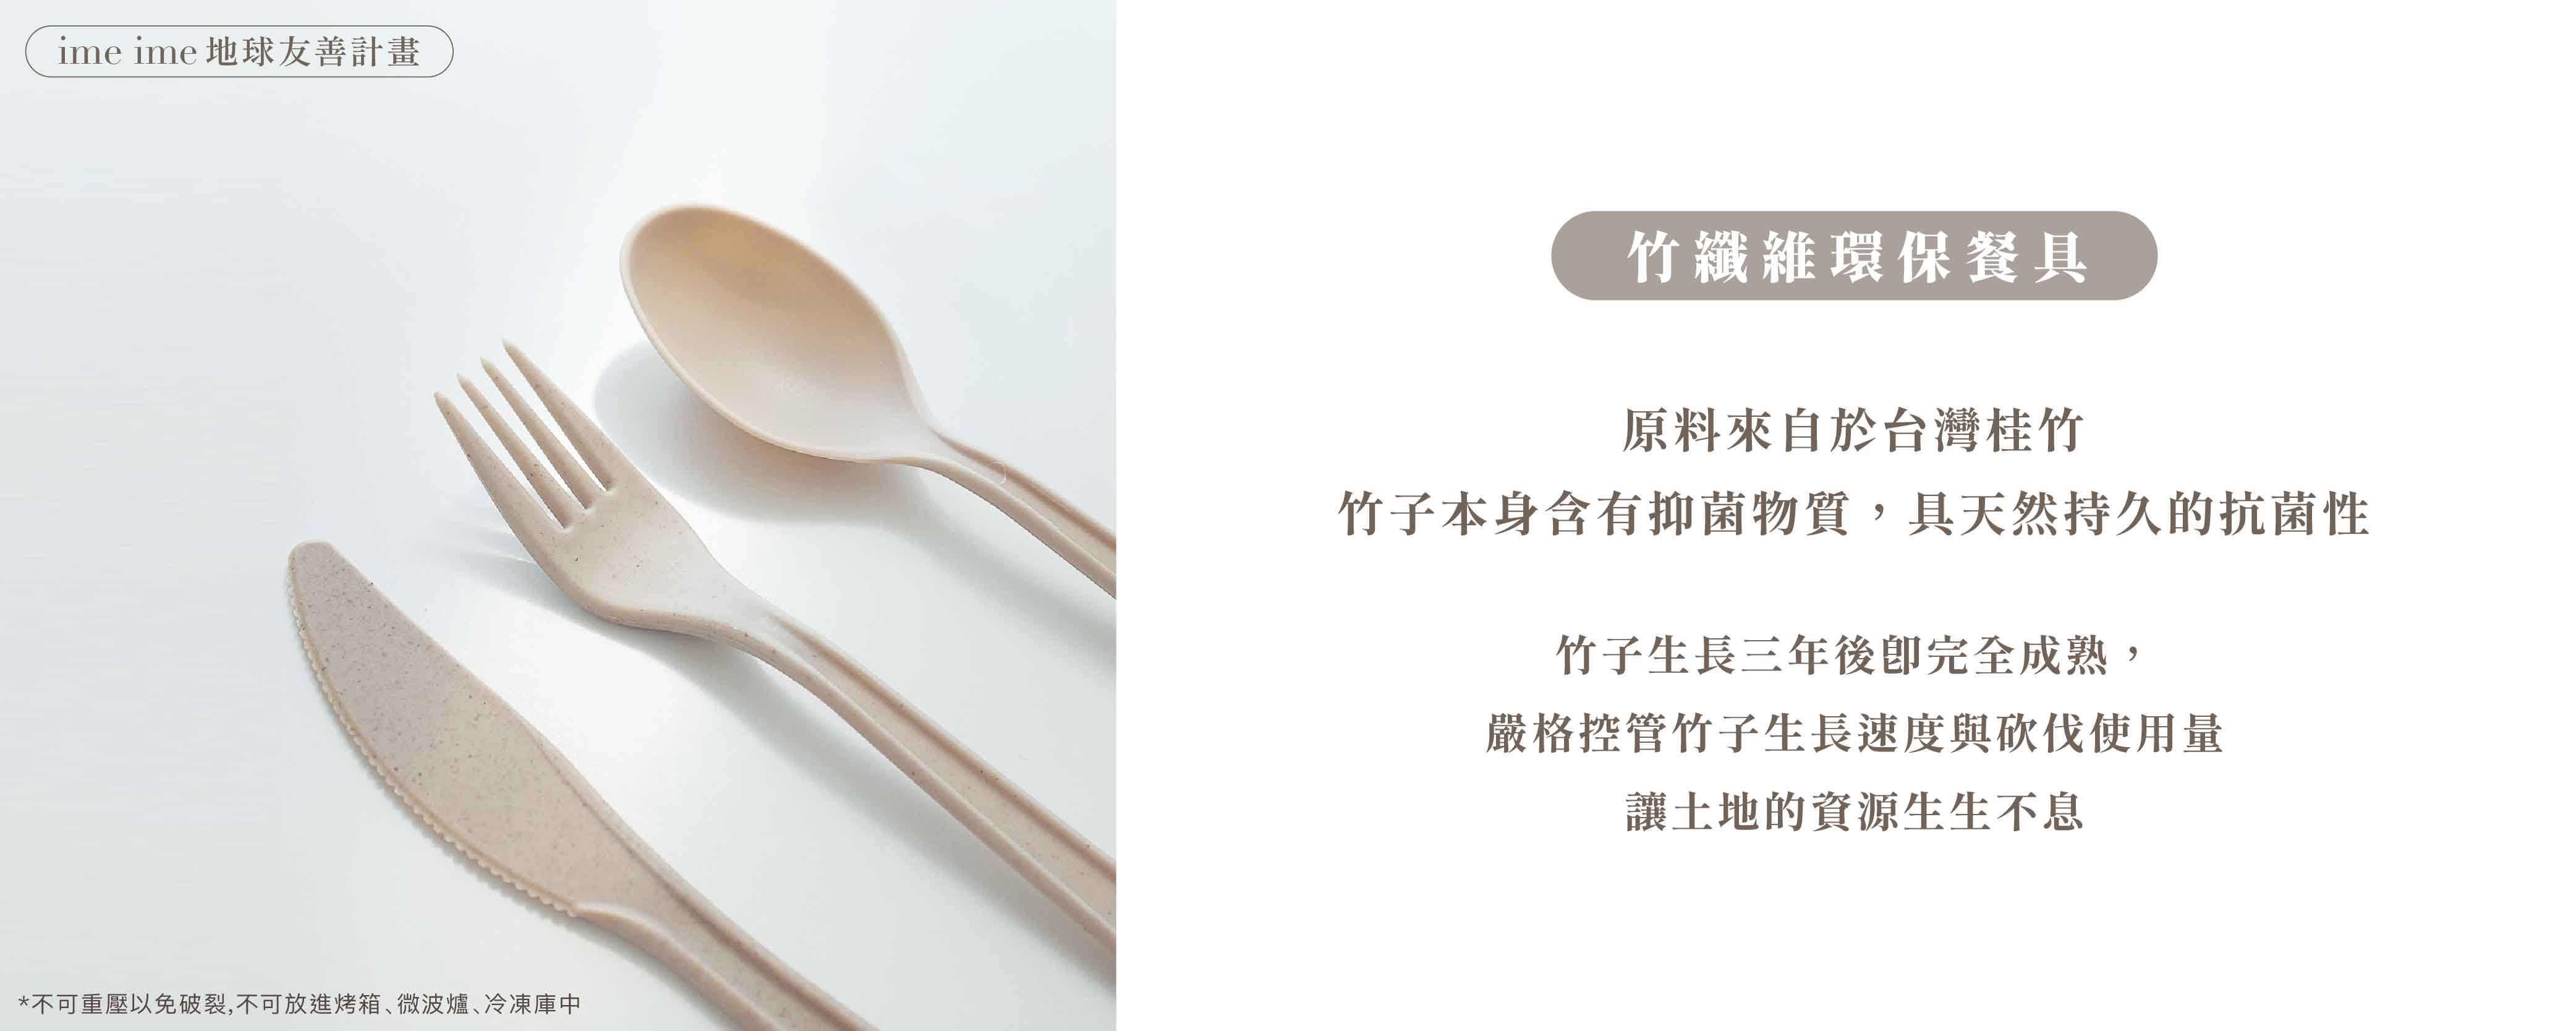 竹纖維環保餐具,刀茶湯匙組,可重複使用